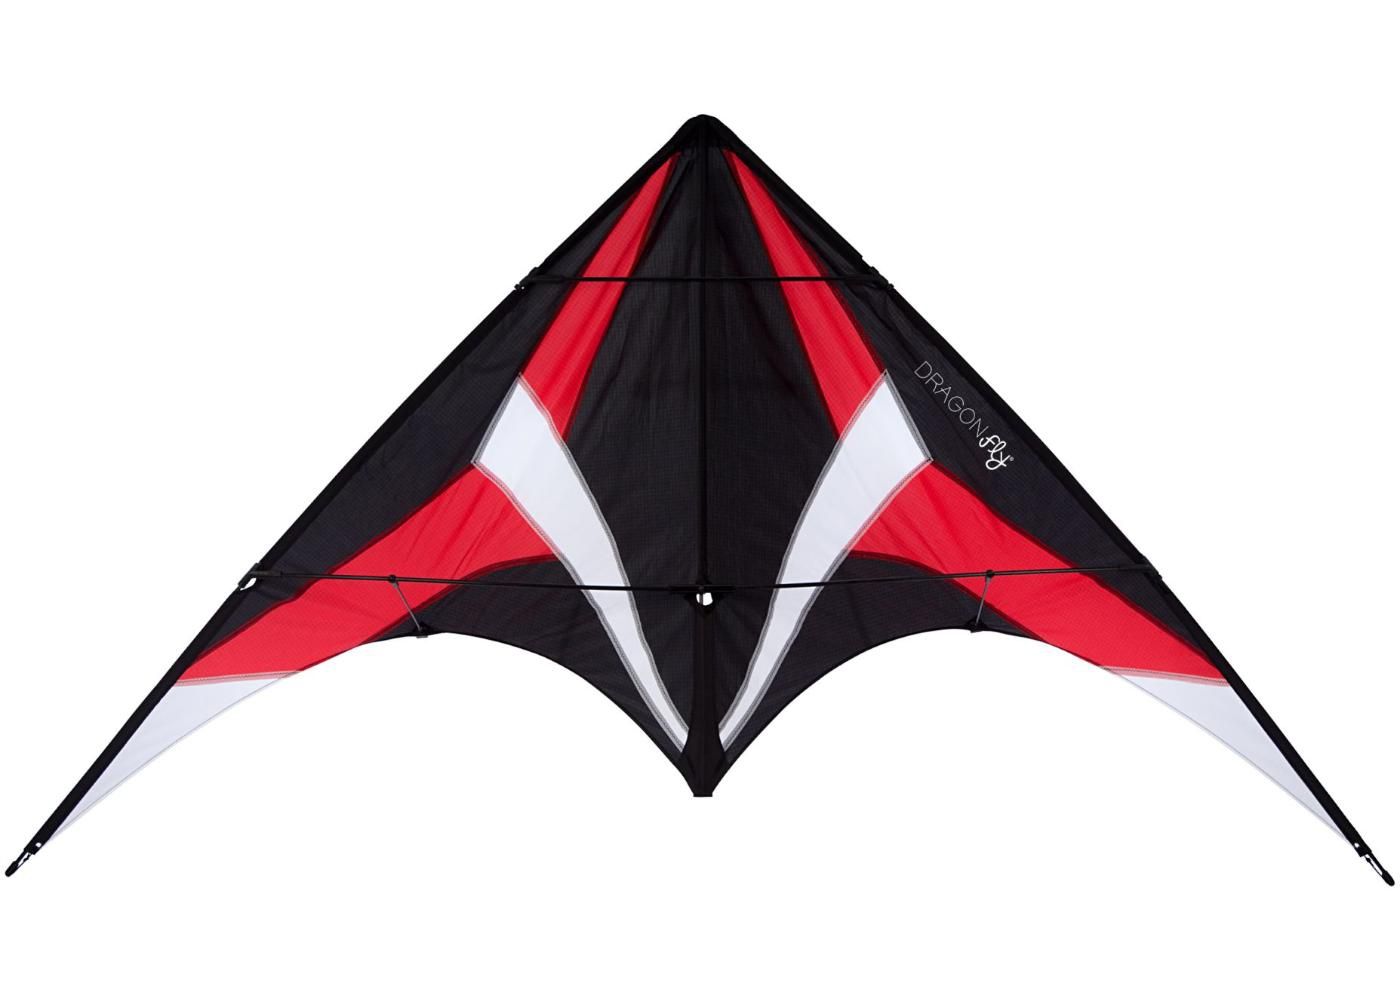 Tuulelohe trikitamiseks Stunt Kite Maestro 165 Dragon Fly suurendatud